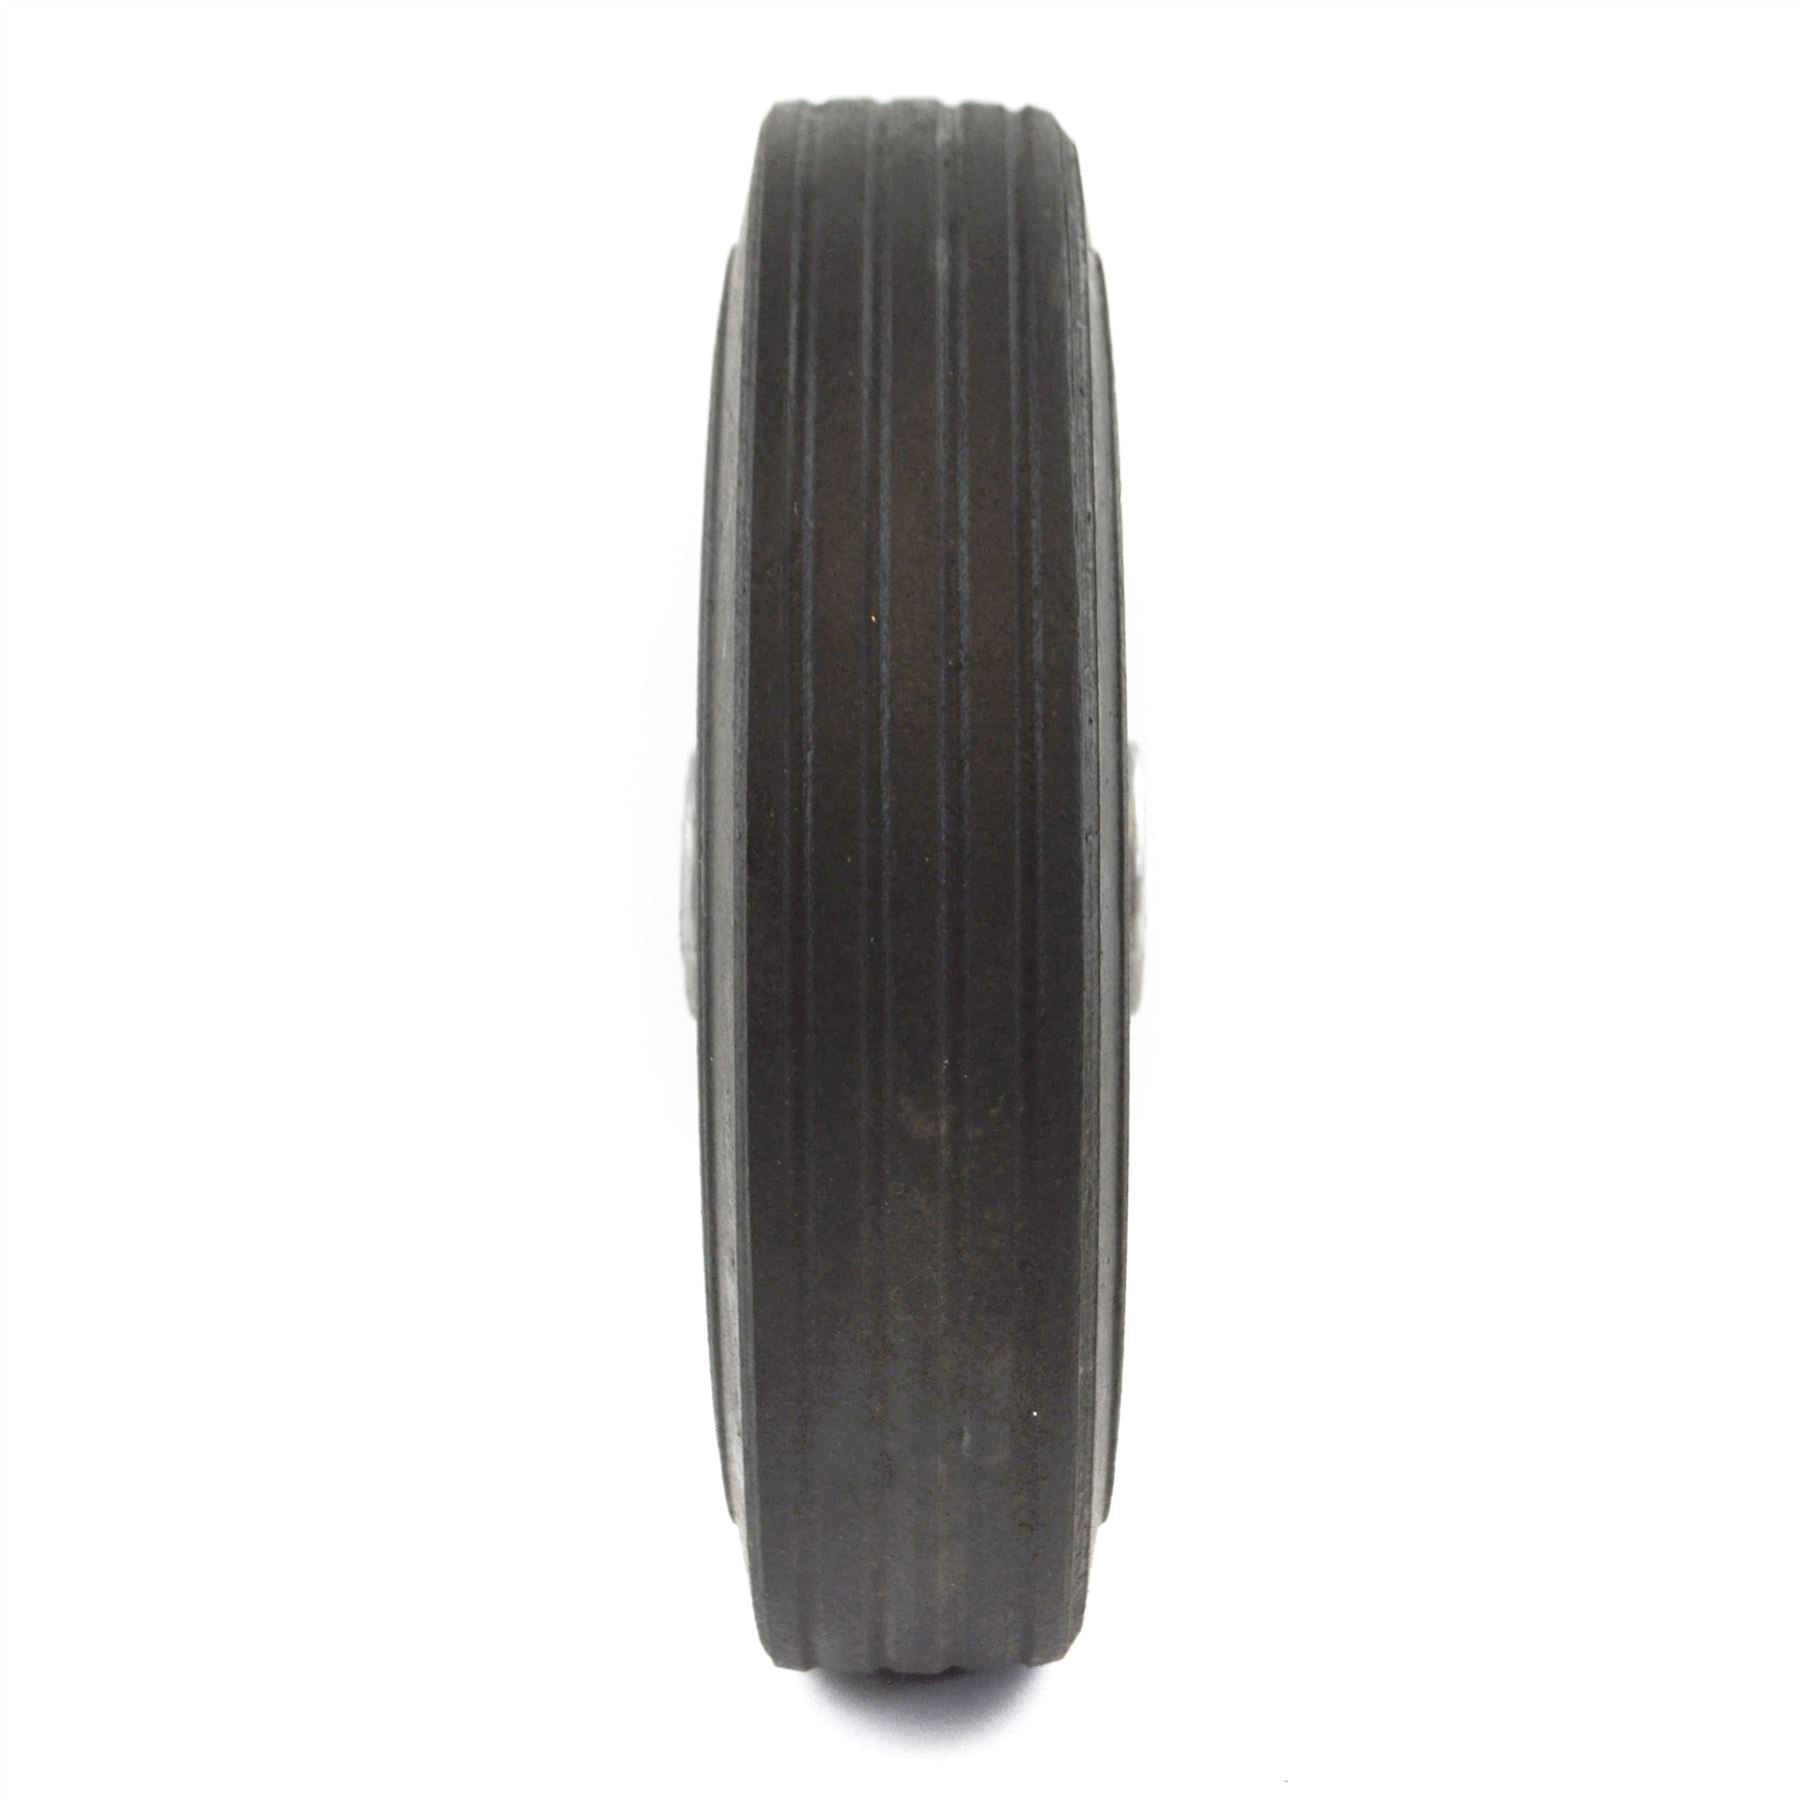 8" (200mm) Steel Replacement Jockey Wheel Tyre Tire Trailer 19mm Bore TE929